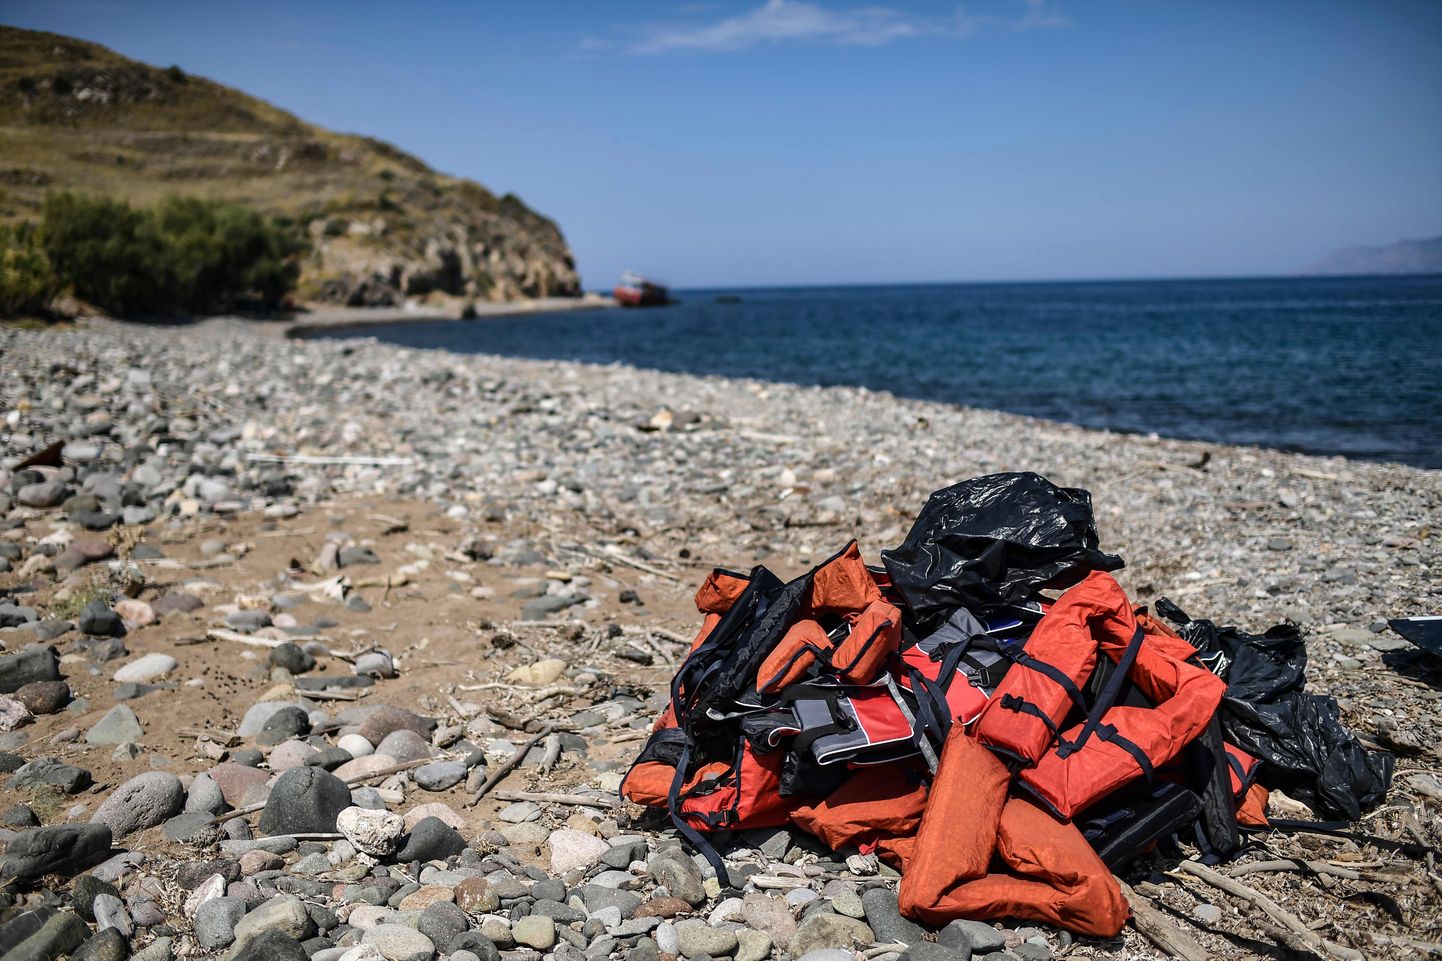 Glābšanas vestes Lezbas salā Grieķijā